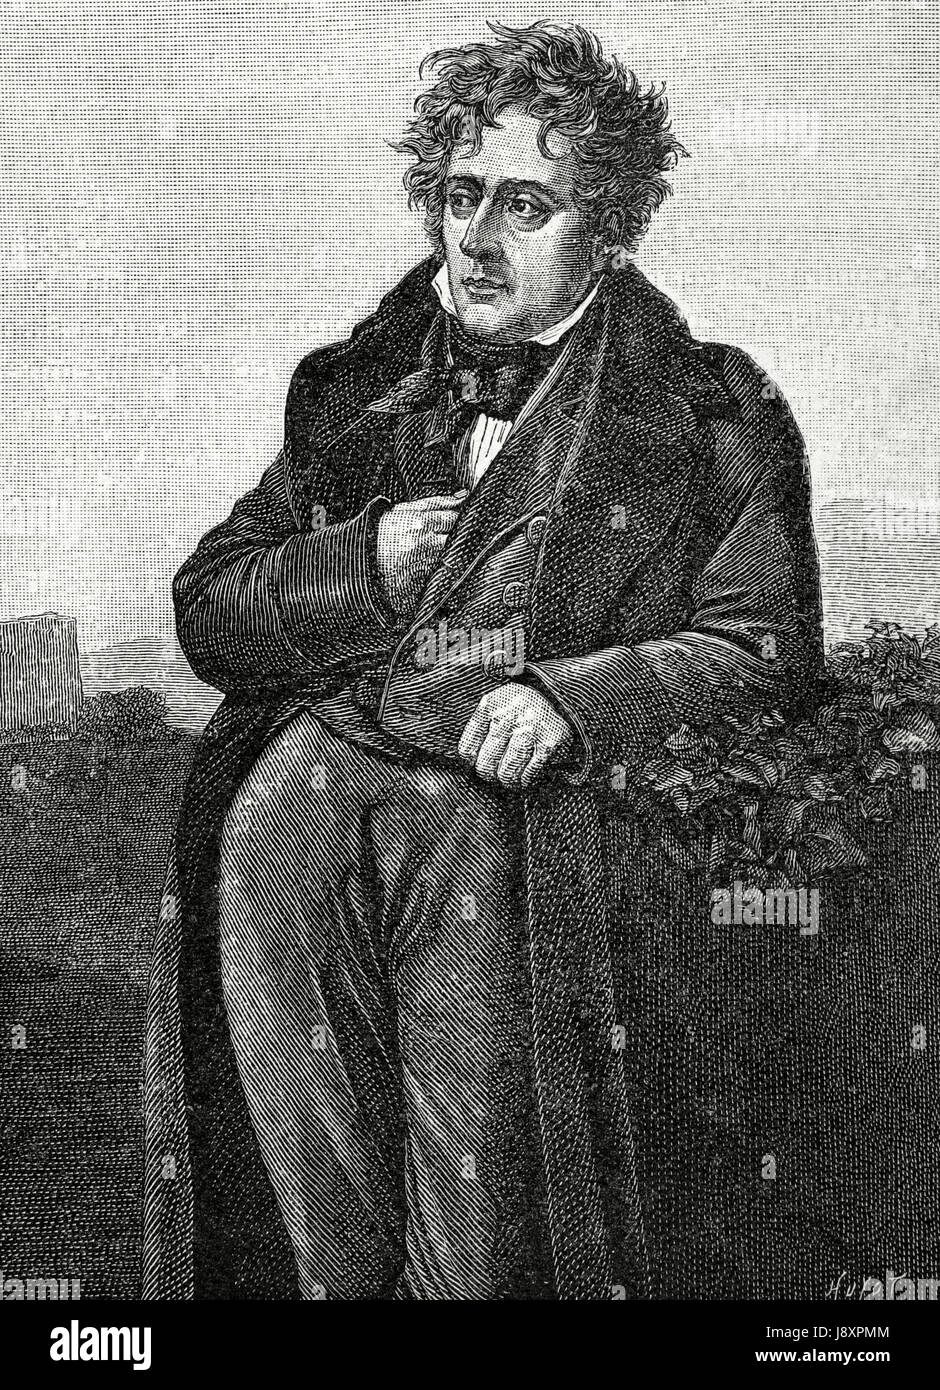 Chateaubriand, François René, Vicomte de (1768-1848). Französischer Schriftsteller und Mitglied der französischen Akademie (1811). Porträt. Kupferstich von Huyot. "Historia de Francia", 1883. Stockfoto